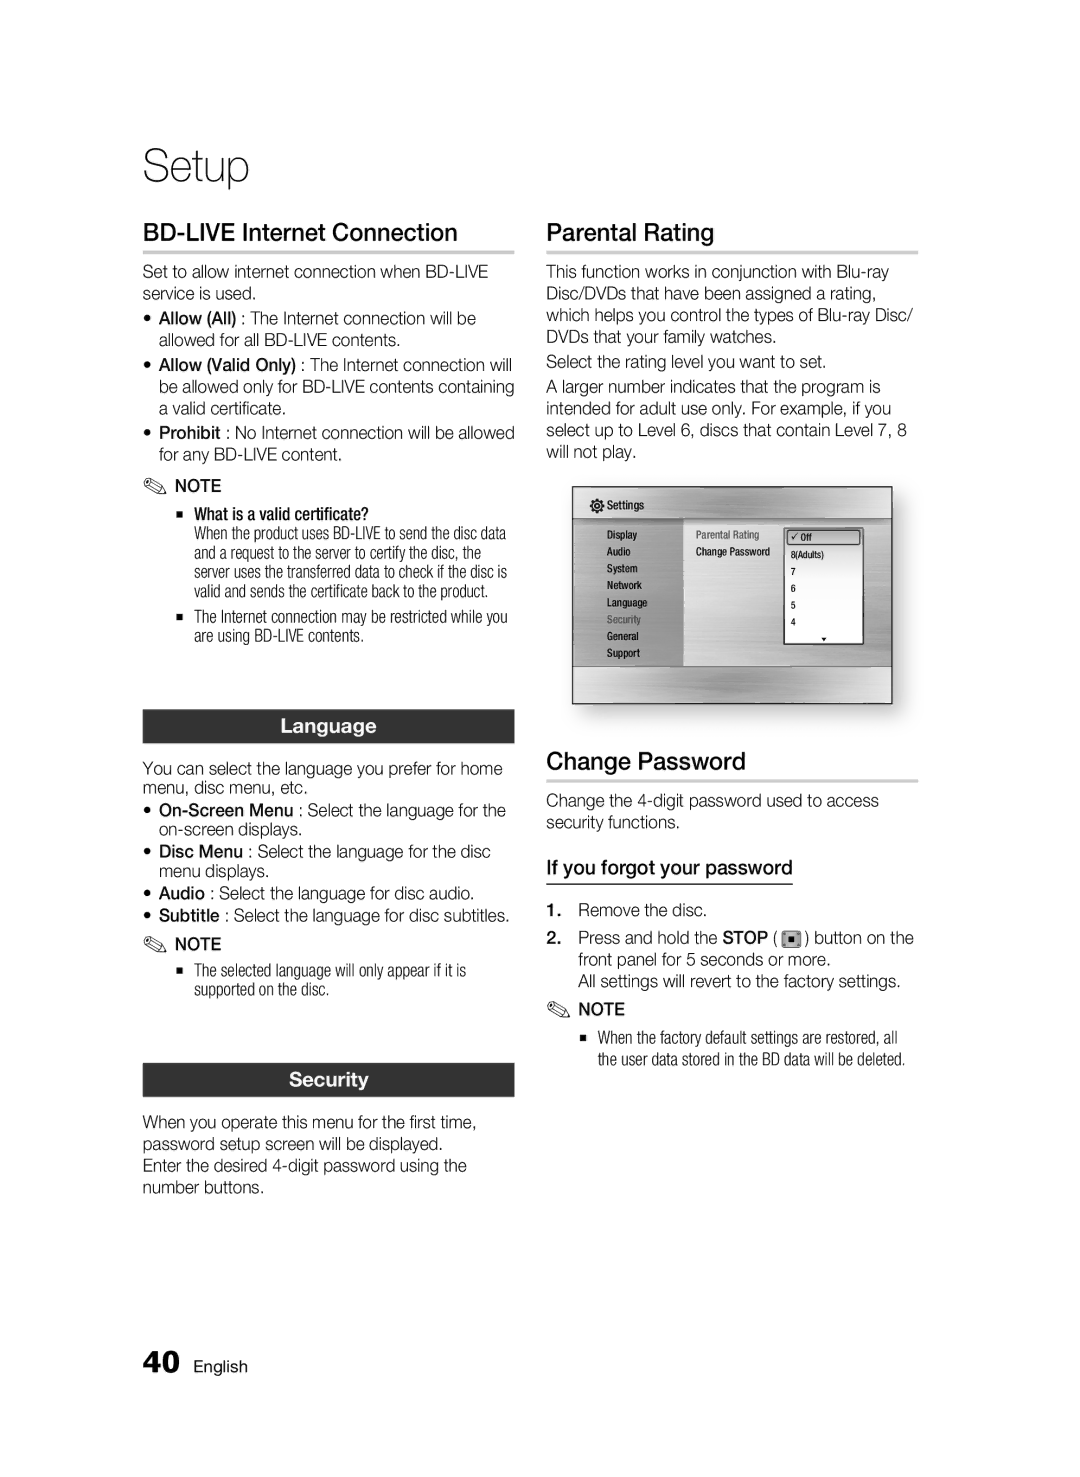 Samsung BD-C5300/EDC, BD-C5300/XEN manual BD-LIVE Internet Connection, Parental Rating, Change Password, Language, Security 